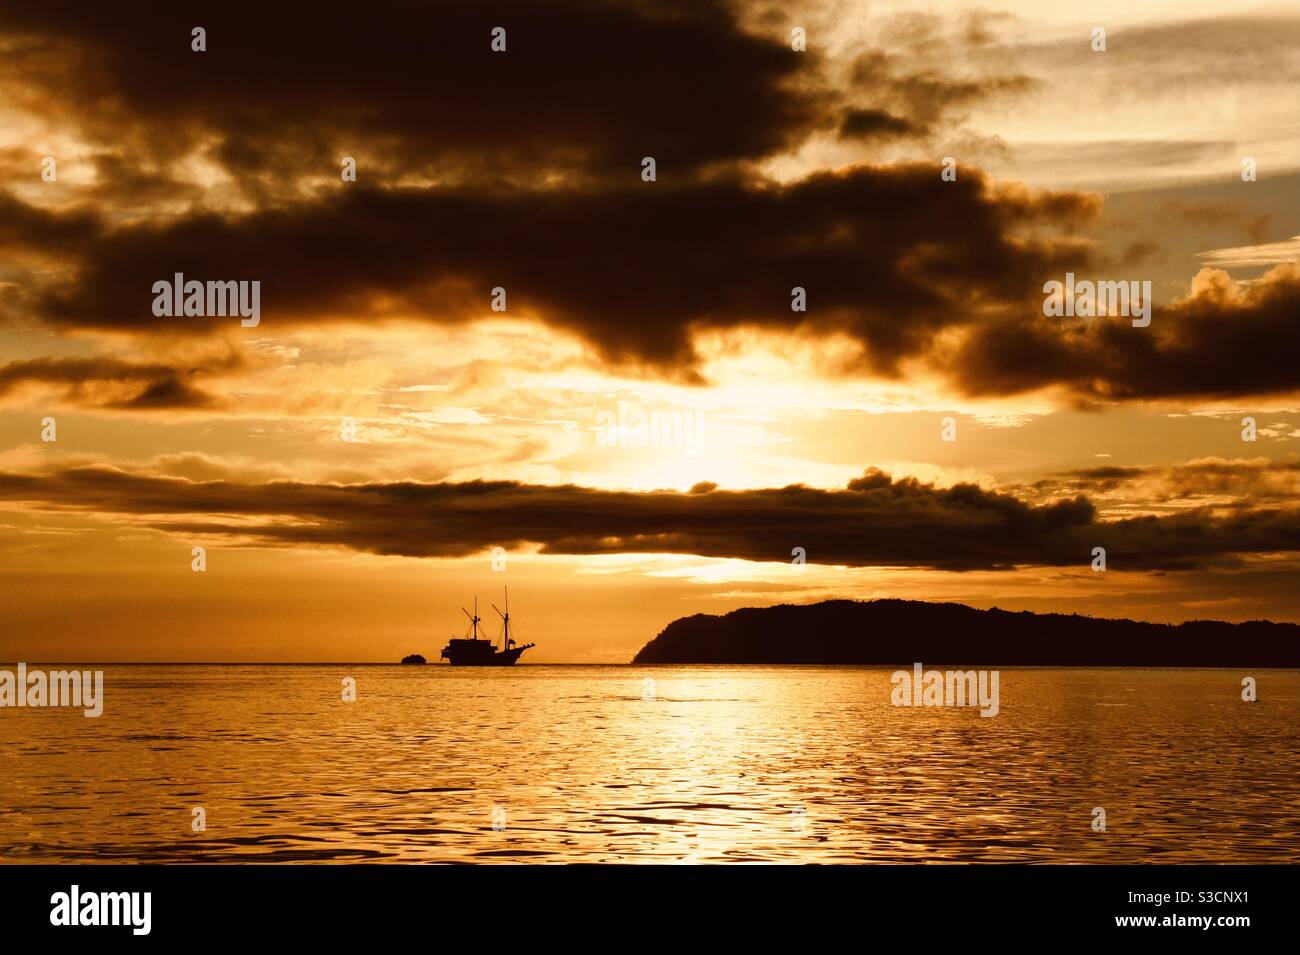 Orange sunset with boat on the horizon Raja Ampat Indonesia Stock Photo